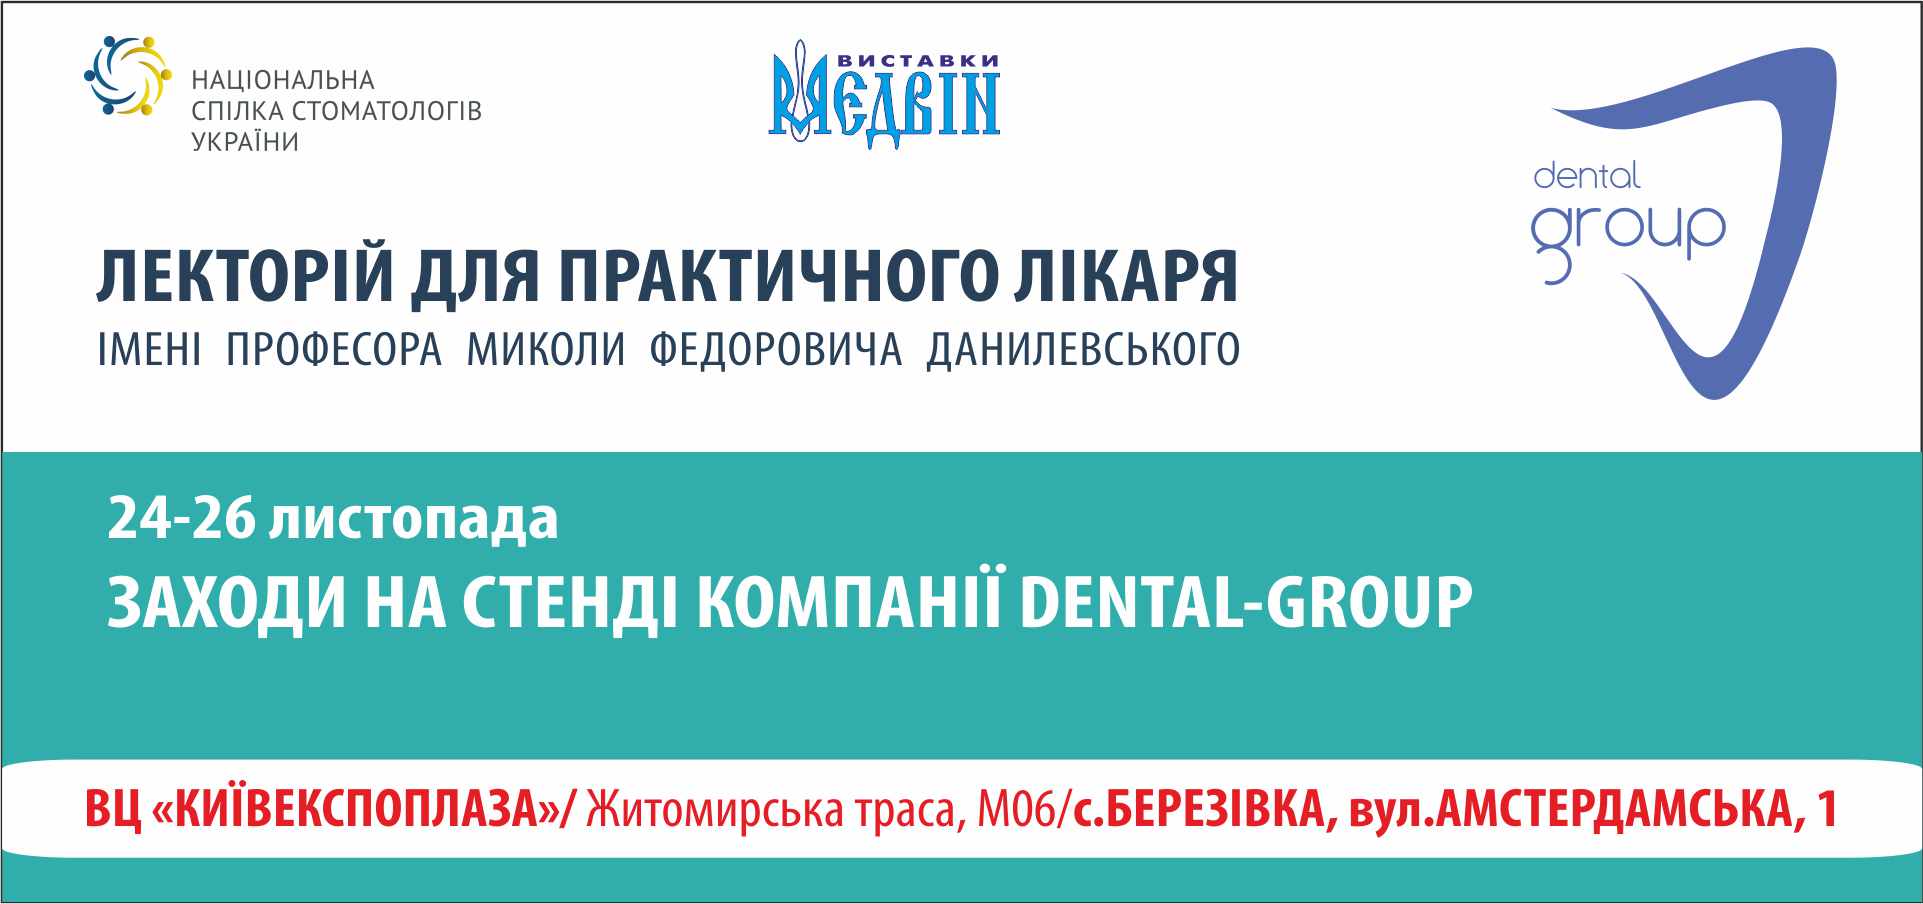 Заходи на стенді компанії Dental-Group 24-26.11.21